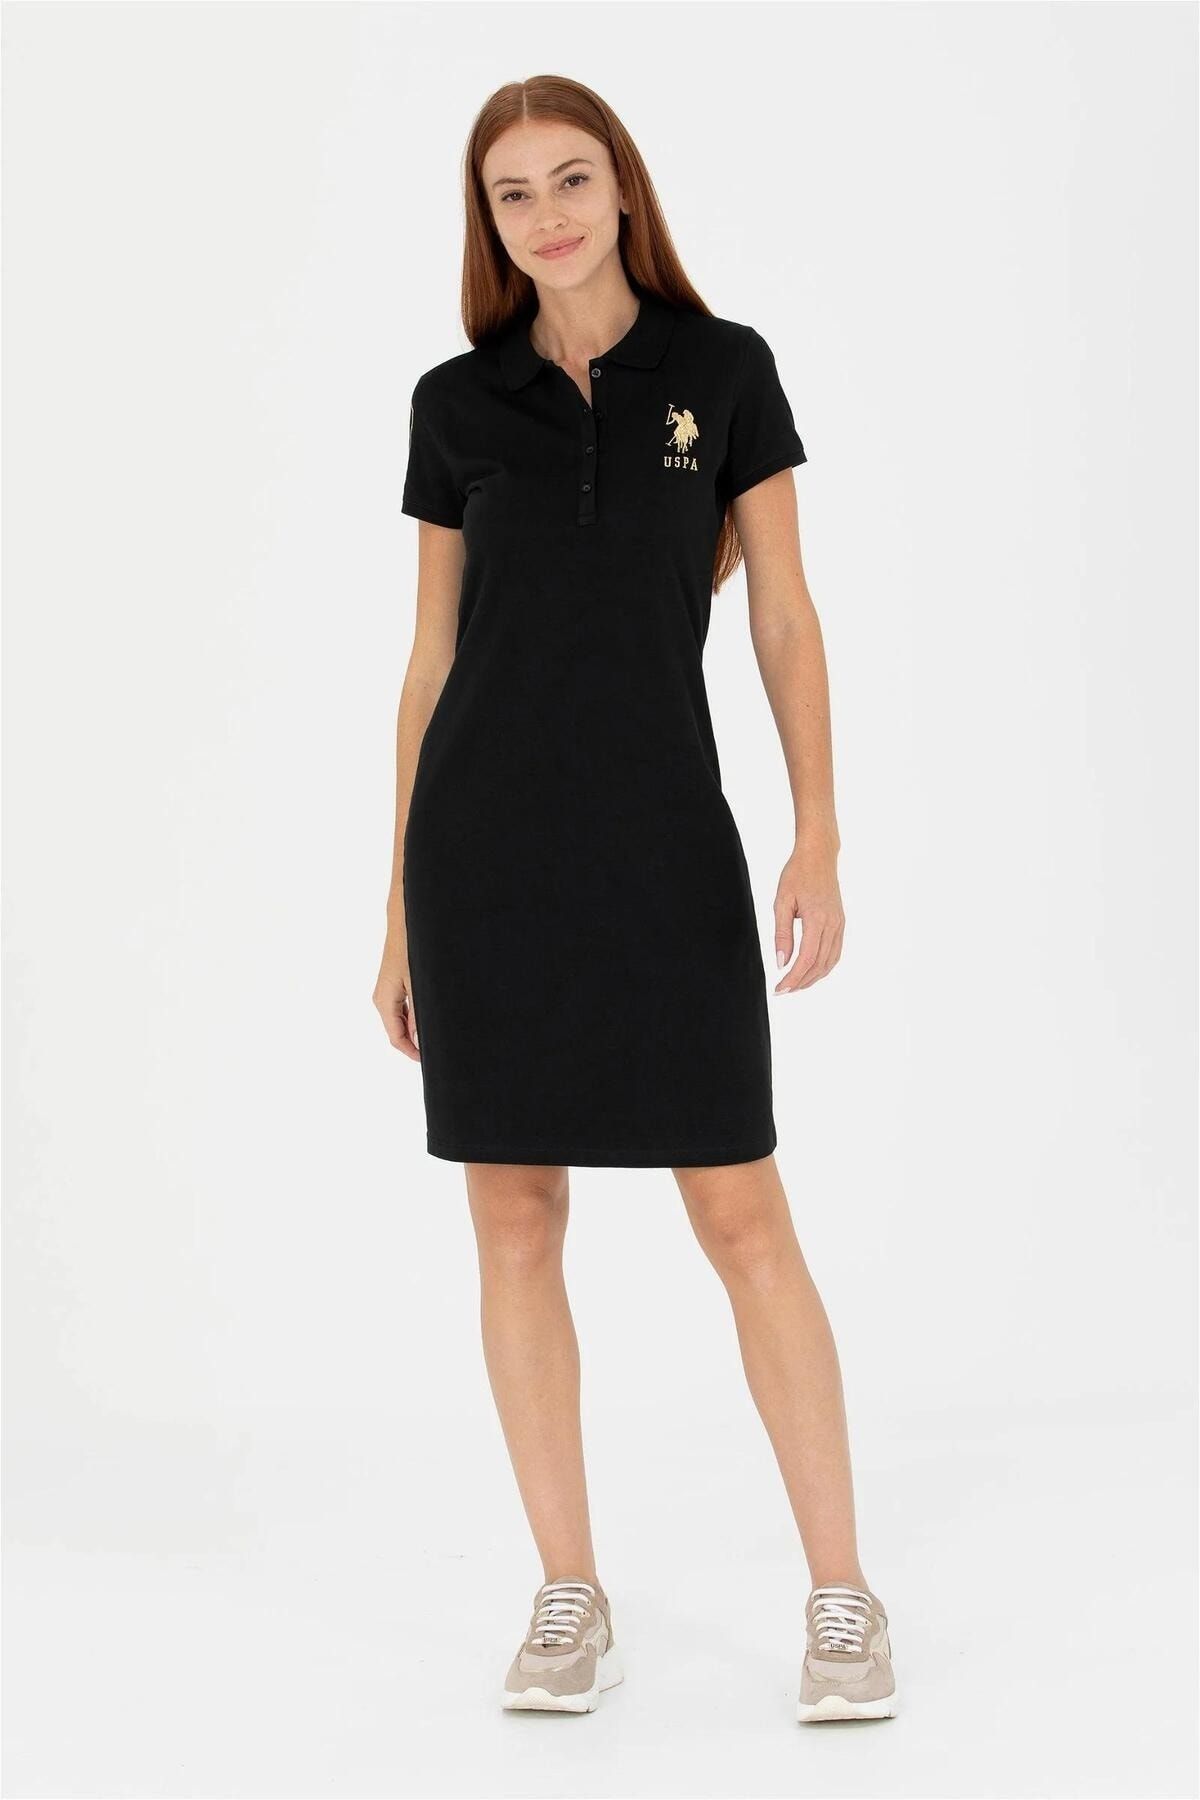 U.S. Polo Assn. Kadın Siyah Örme Elbise